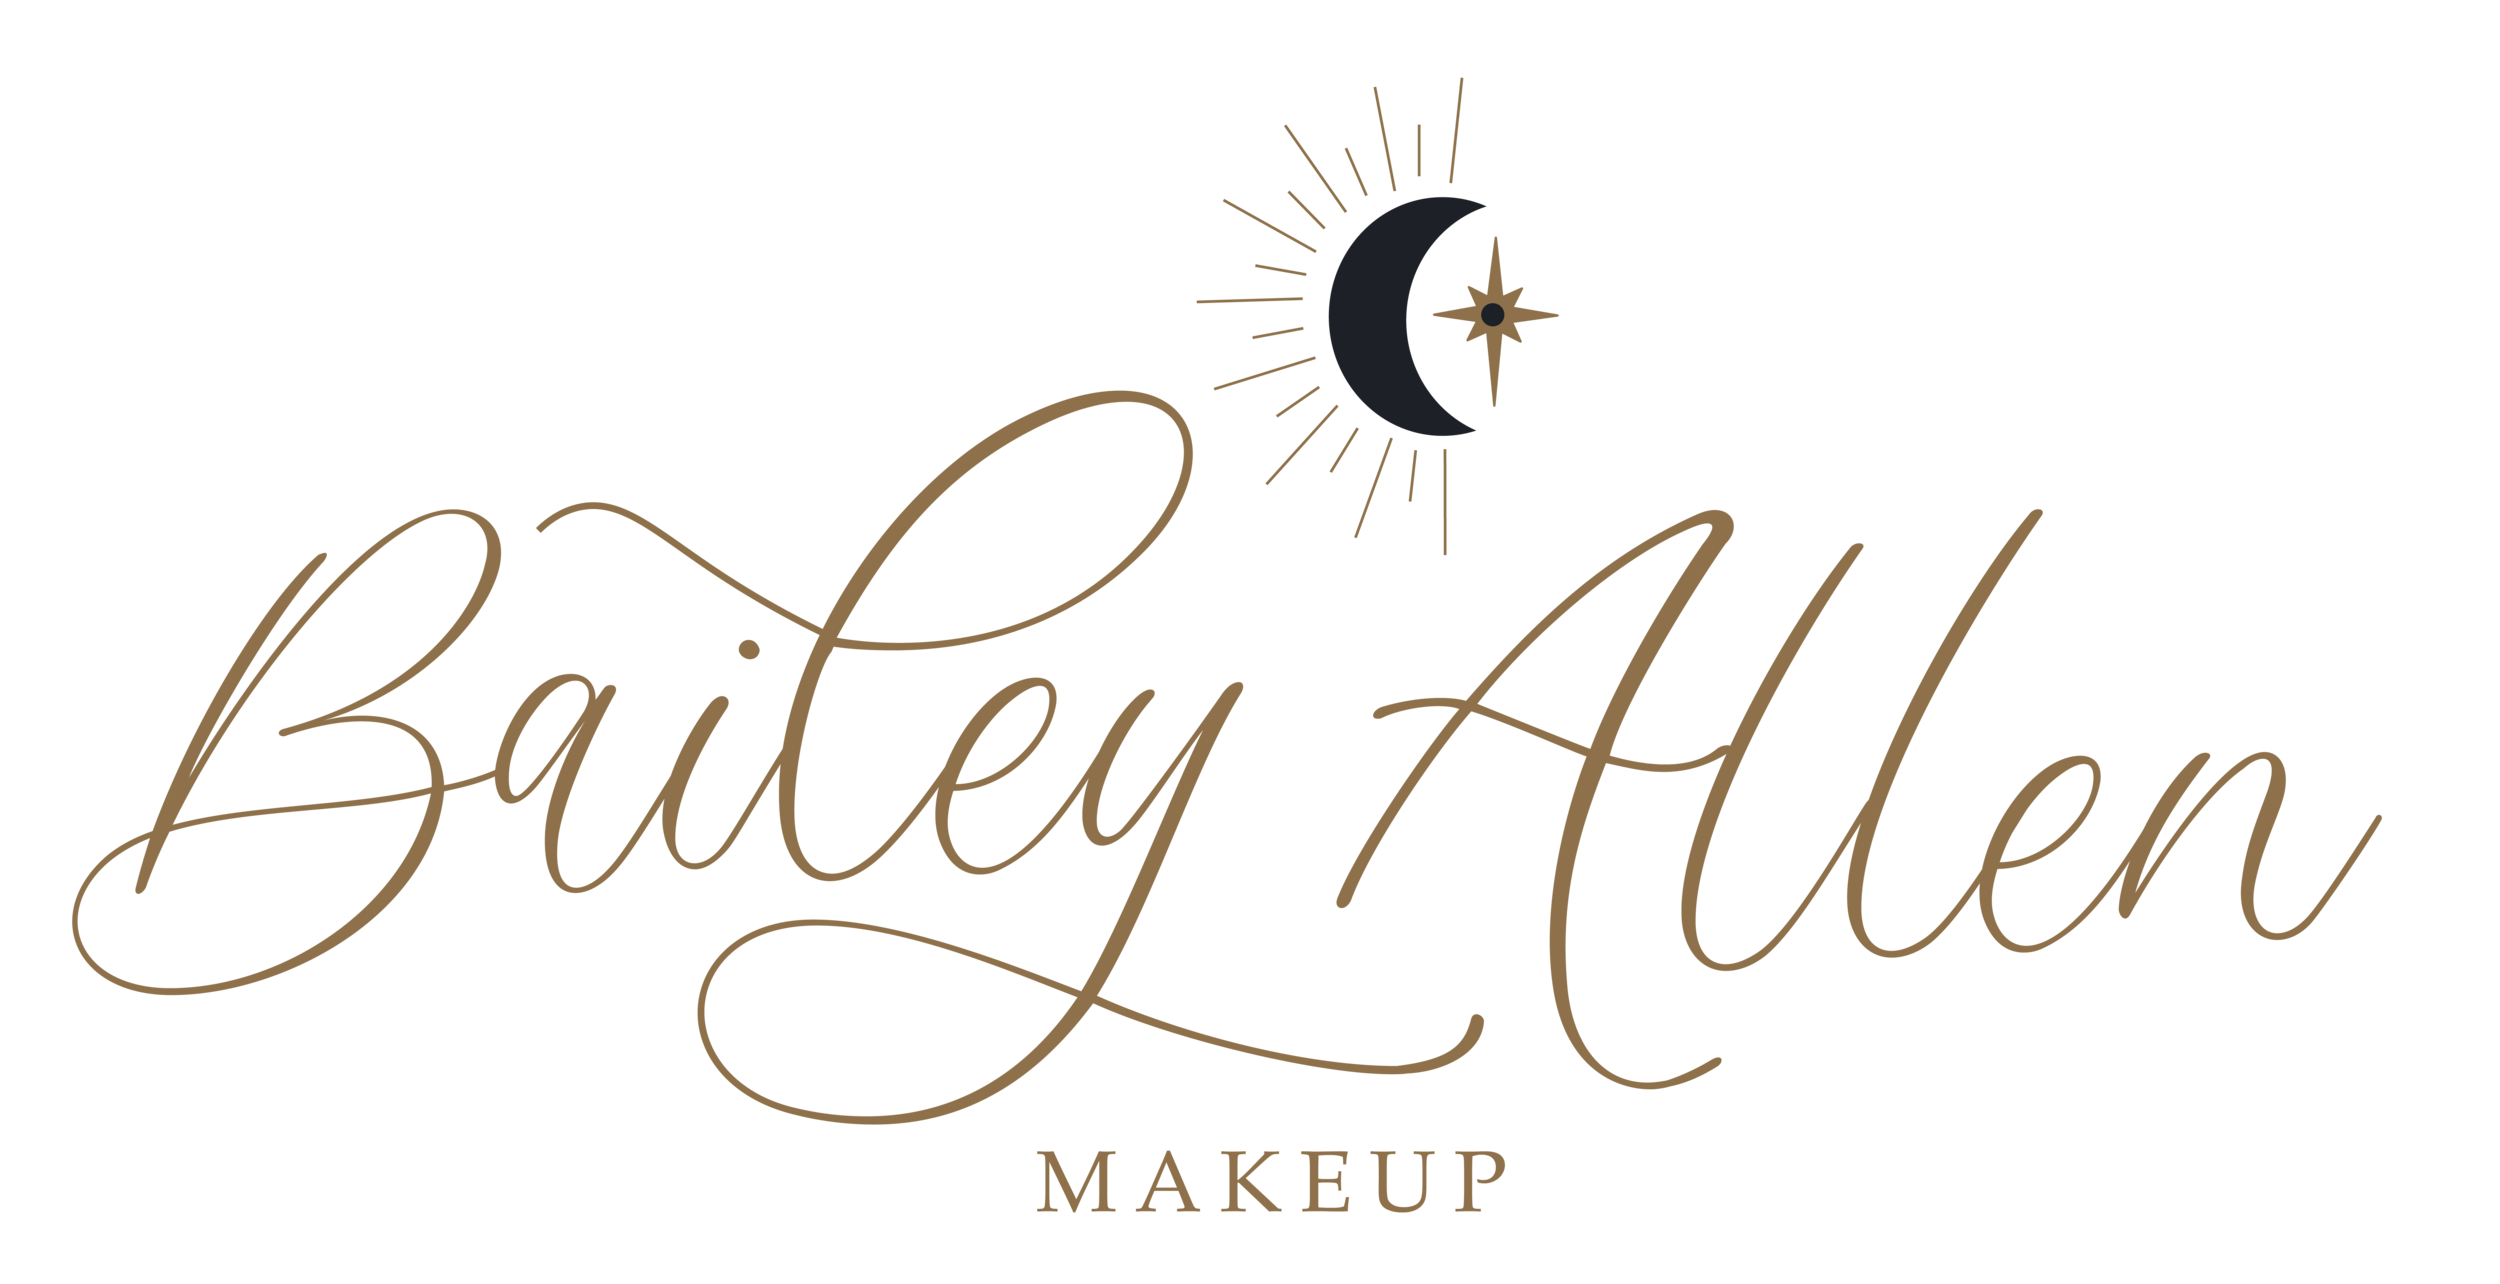 Bailey Allen makeup